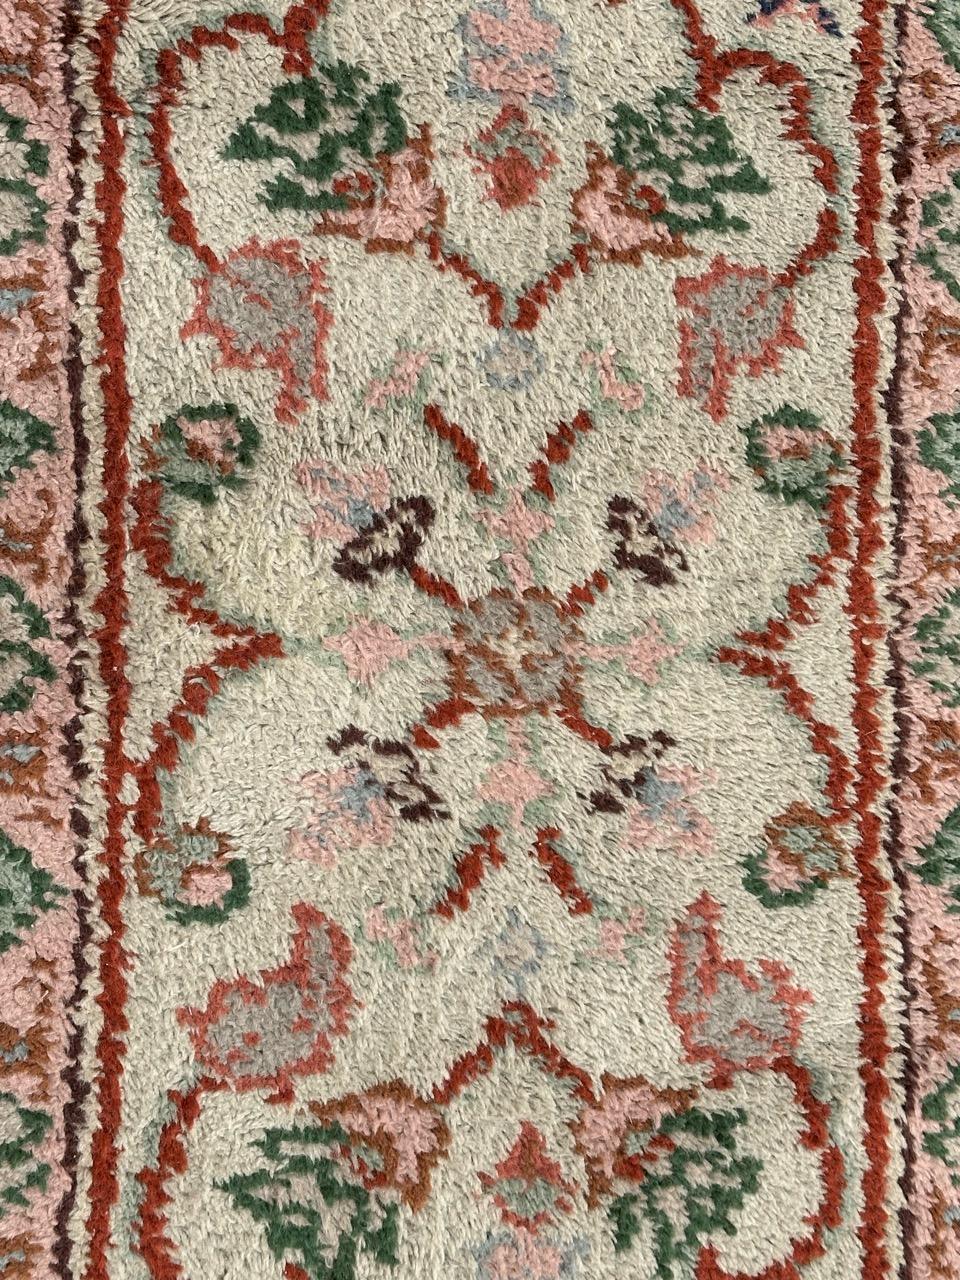 Schöner marokkanischer Teppich aus dem frühen 20. Jahrhundert mit einem Muster der Smyrne- und Oushak-Teppiche, mit weißem Feld, rosa, grün und orangefarbenem Muster, vollständig handgeknüpft mit Wolle auf Baumwollgrund 

✨✨✨
